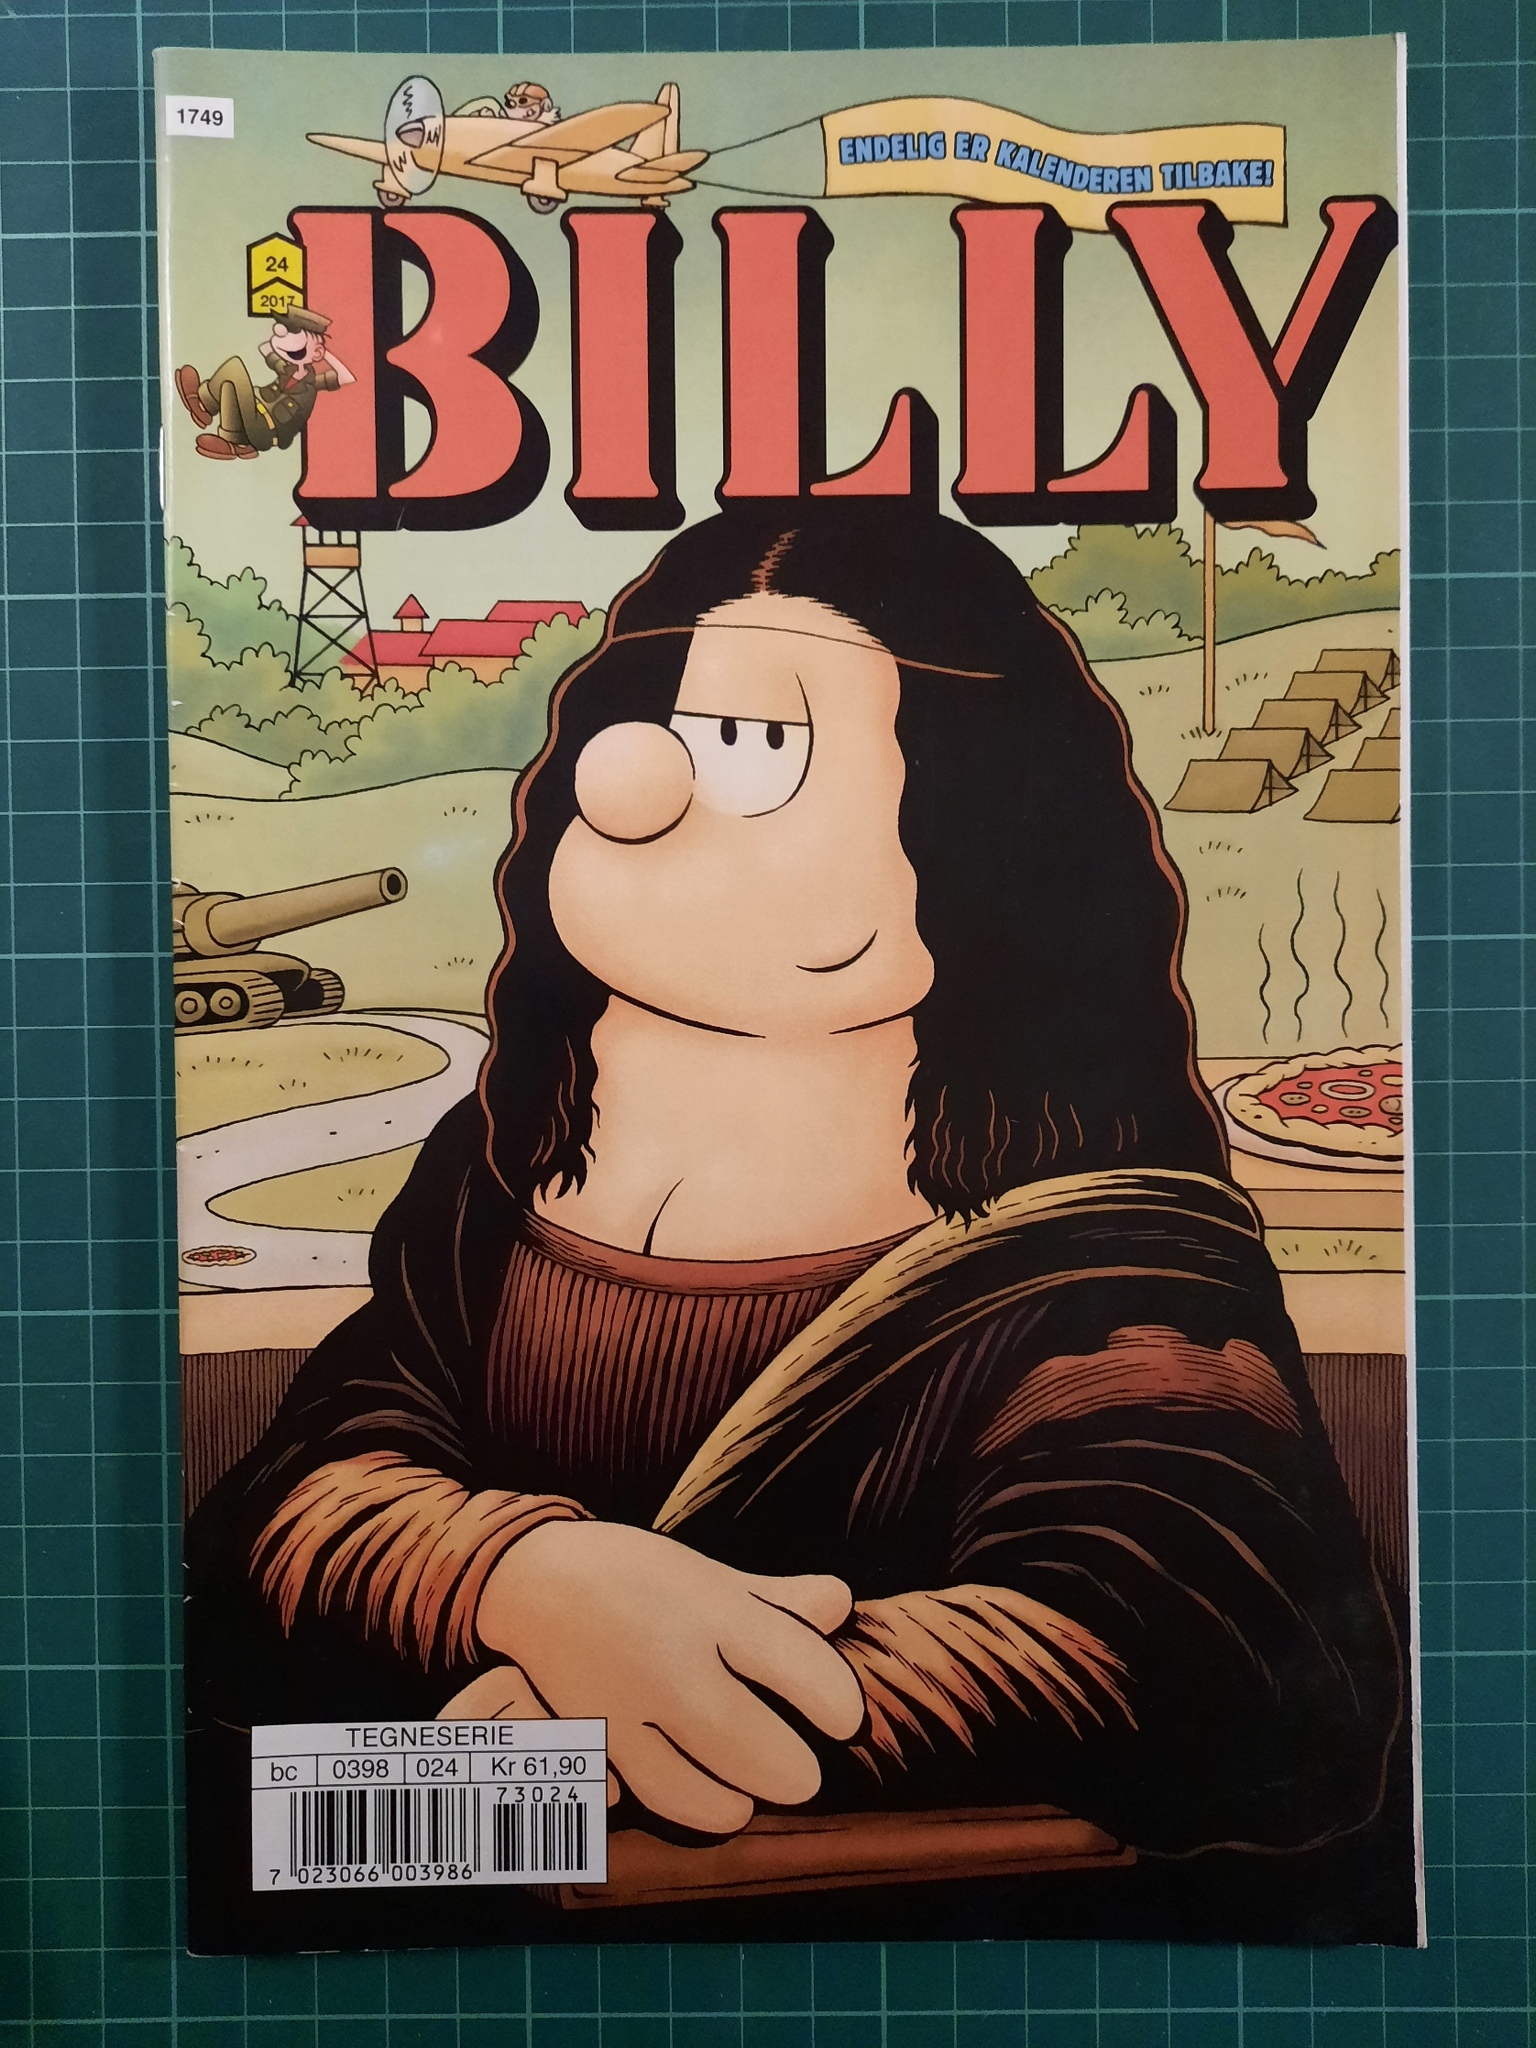 Billy 2017 - 24